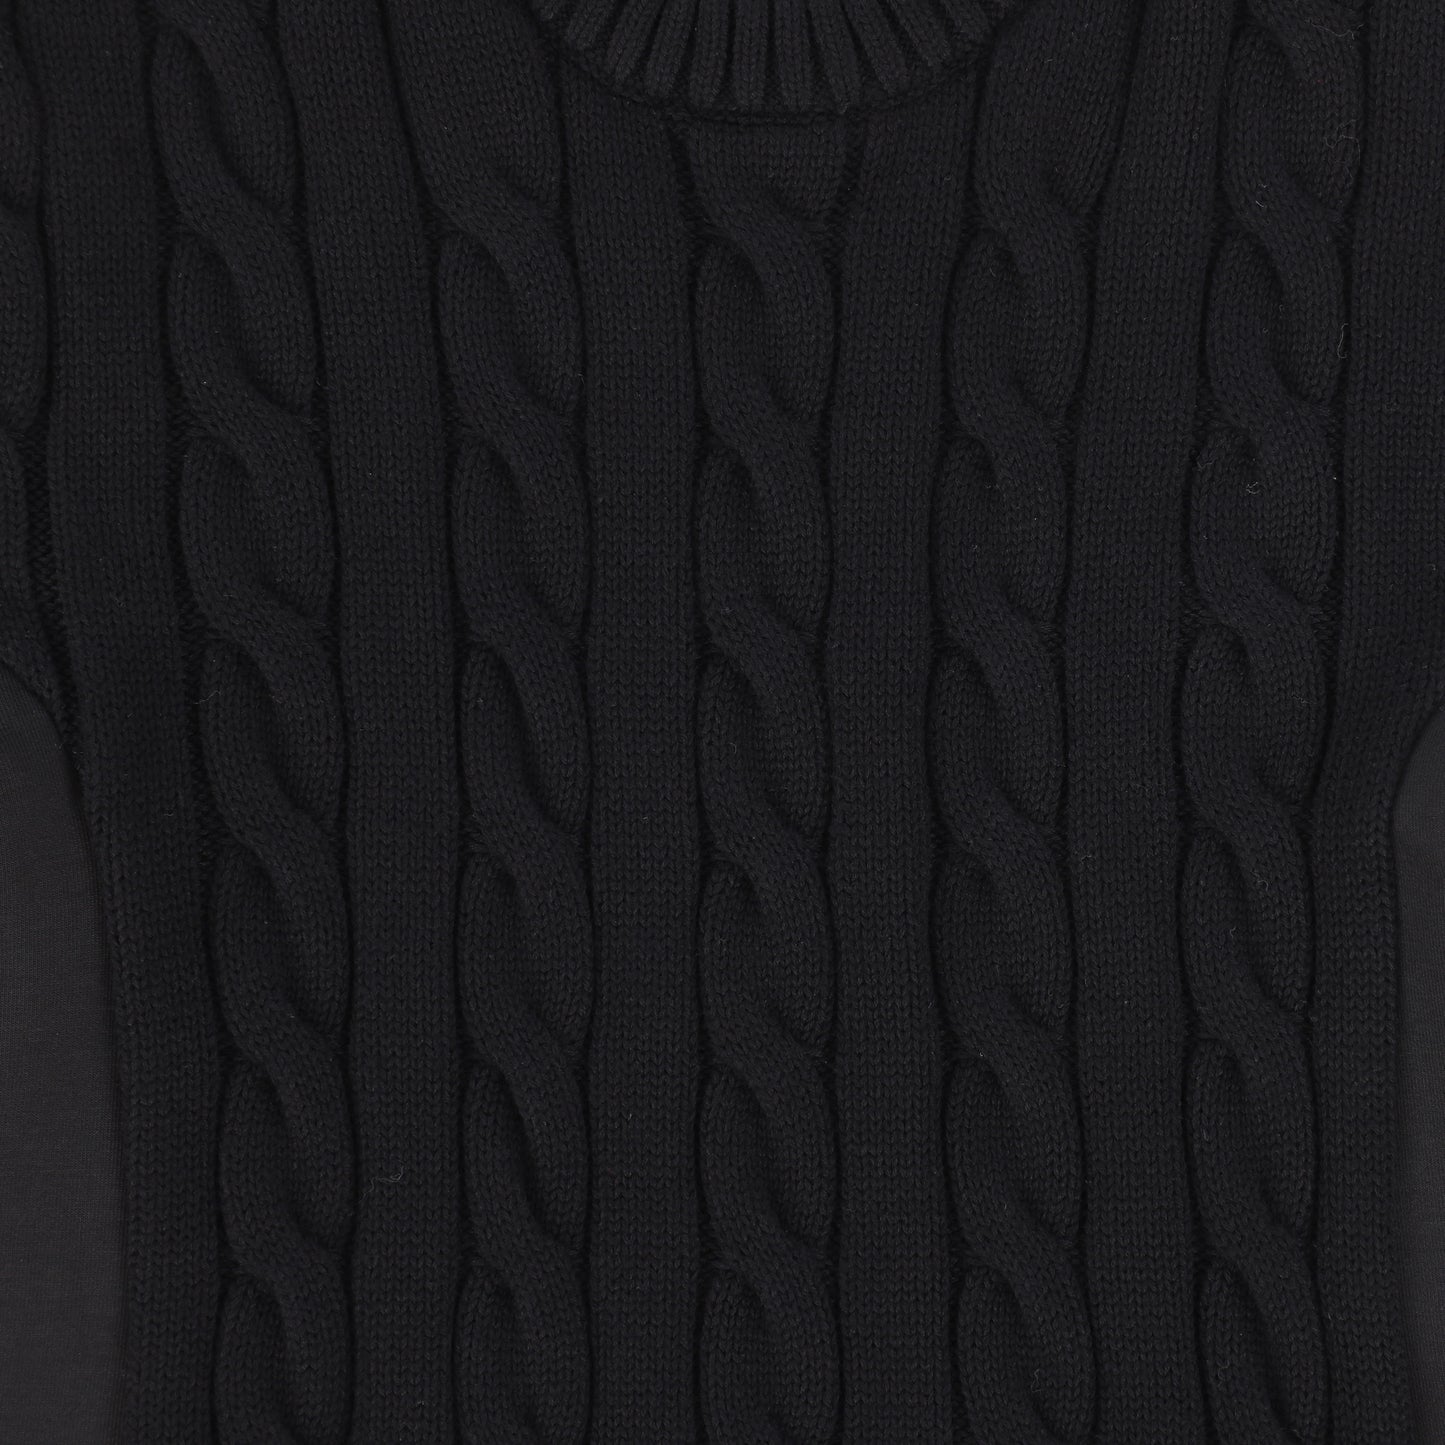 BACE COLLECTION BLACK CABLE KNIT SCUBA DRESS [Final Sale]